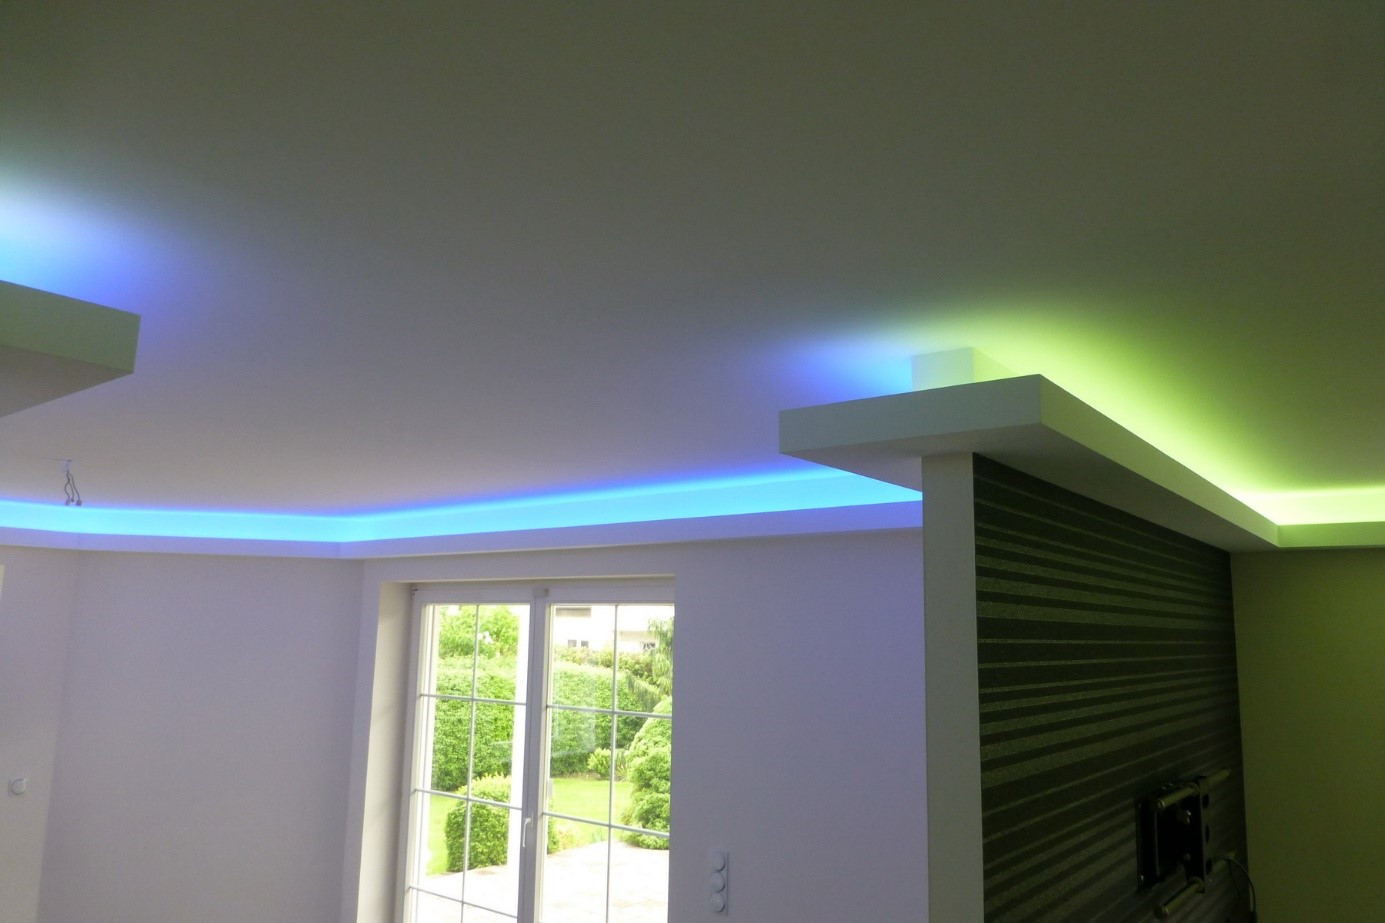 Indirekte Beleuchtung Led
 Anleitung zum Aufbau einer indirekten Beleuchtung mit LEDs